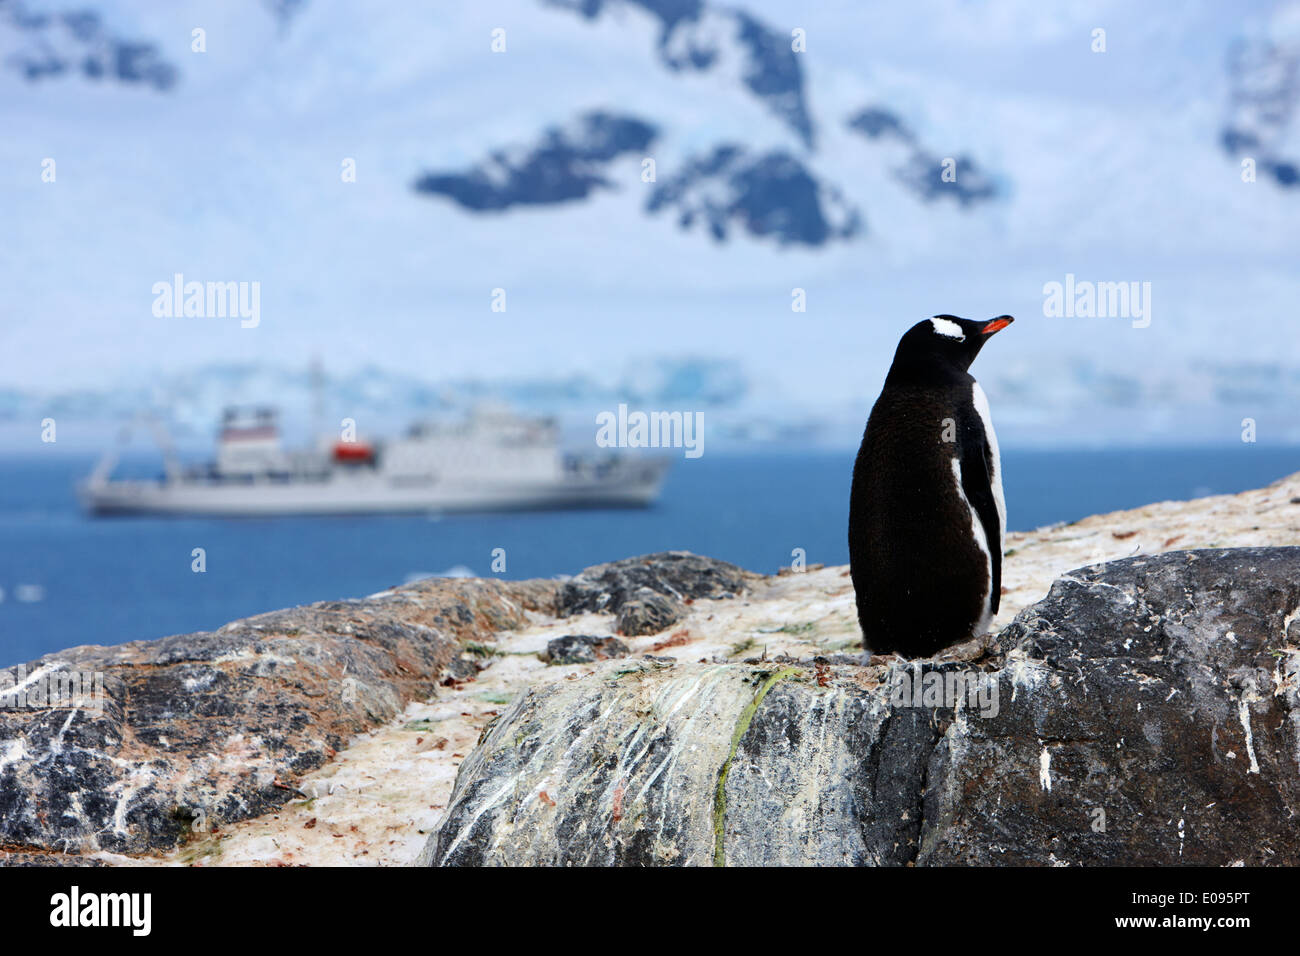 Gentoo pingouin sur roches avec derrière navire d'expédition à Neko Harbour péninsule arctowski continent Antarctique Antarctique Banque D'Images